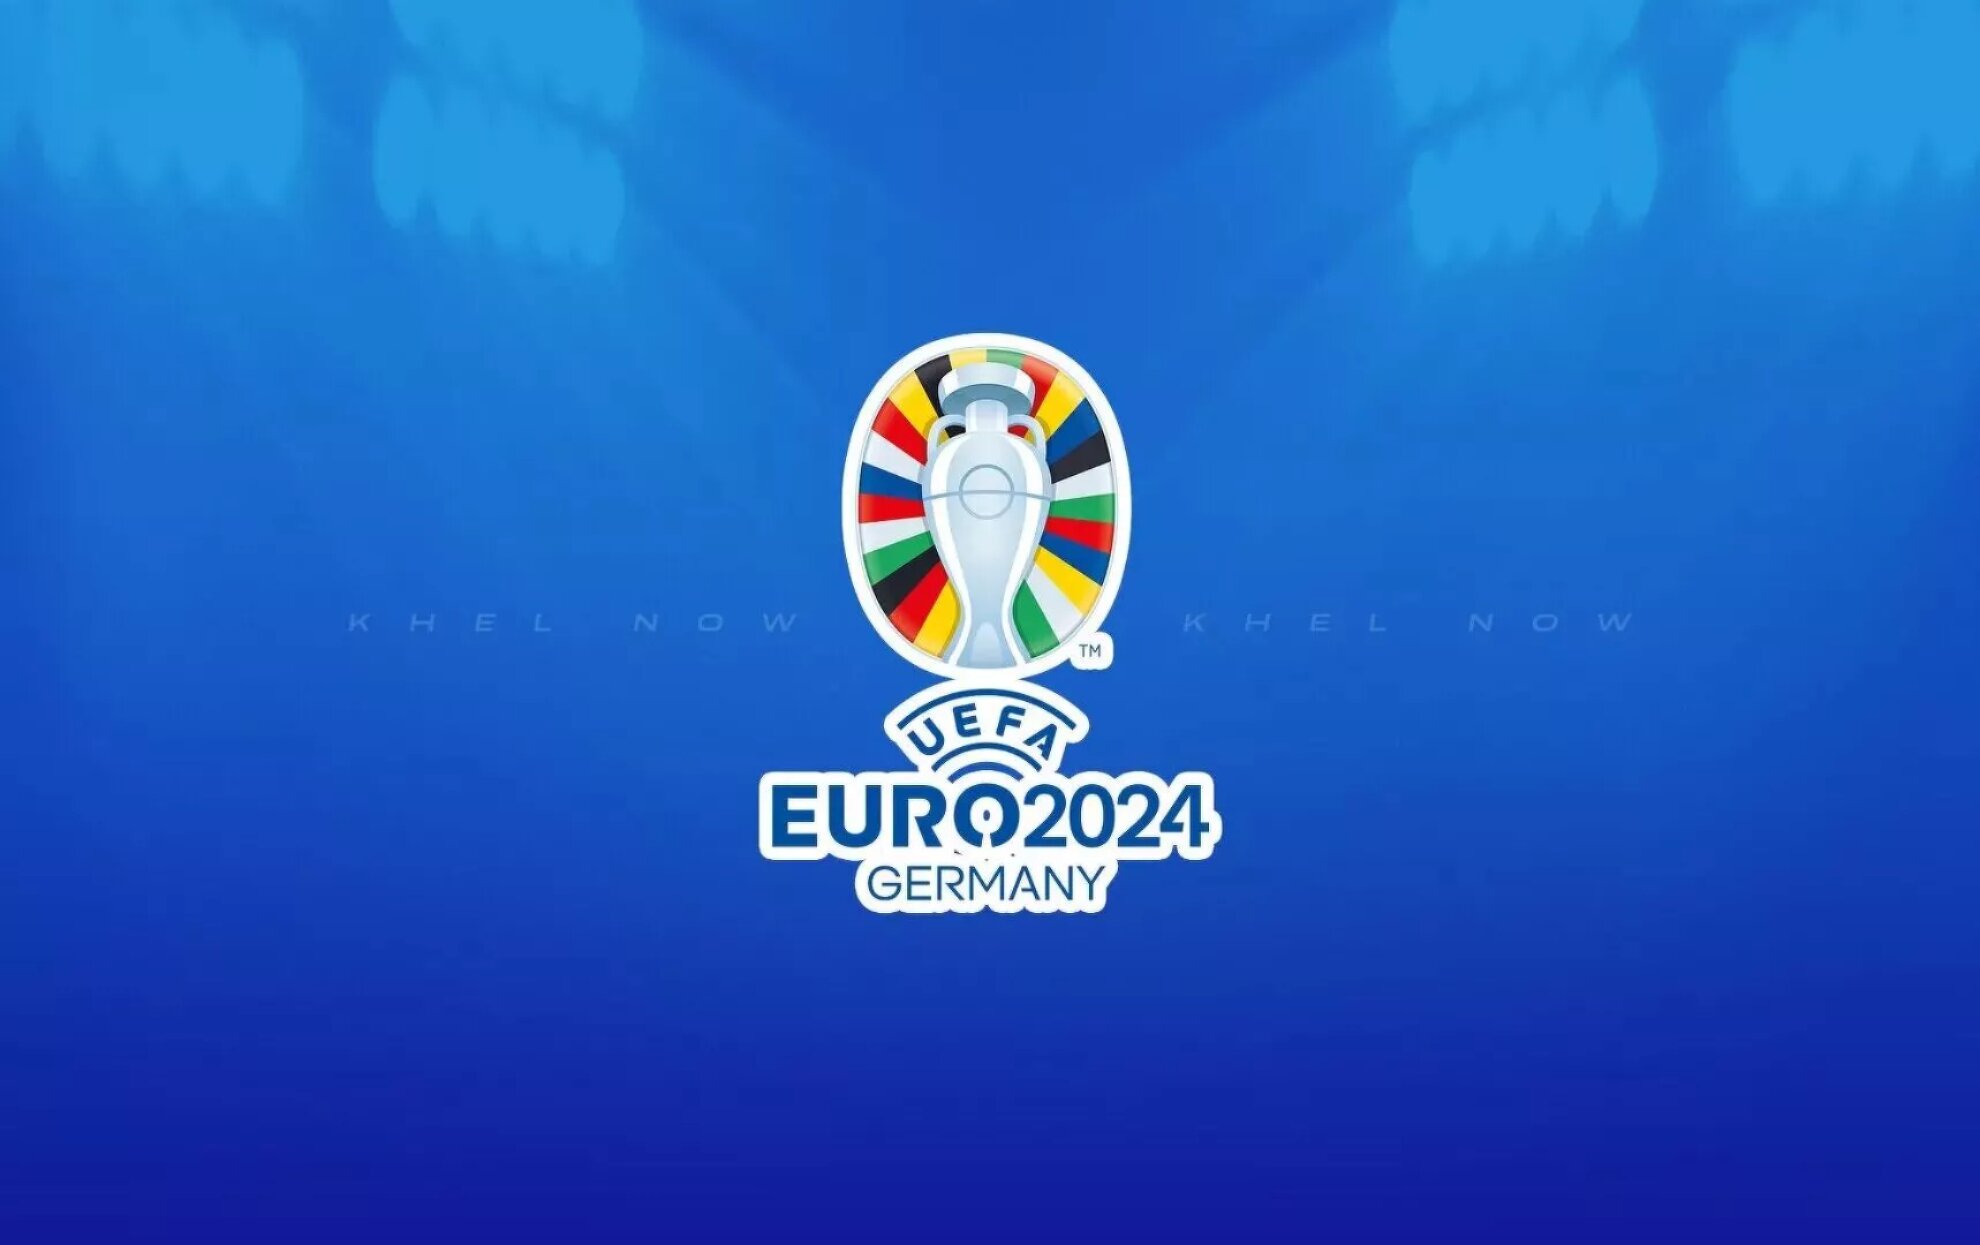 Zullen Frankrijk en Nederland strijden om de derde plaats op Euro 2024?